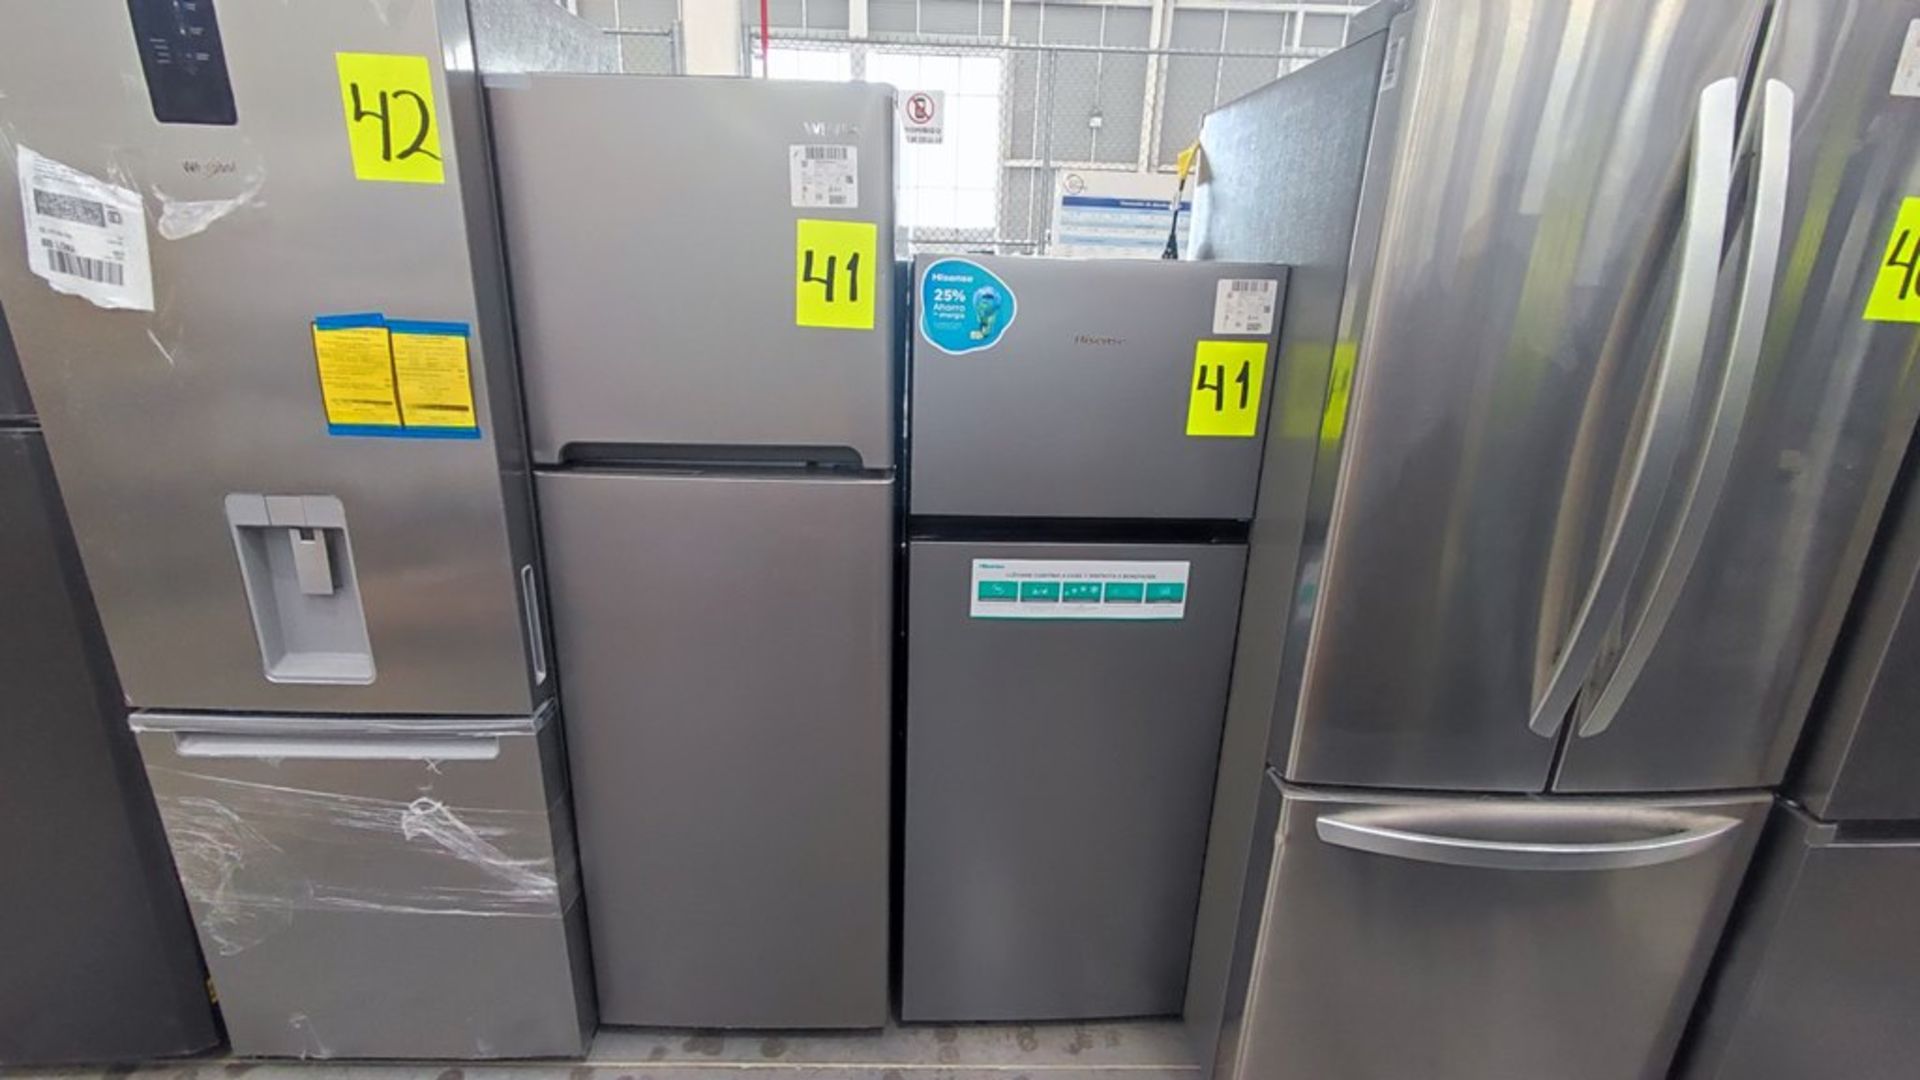 Lote de 2 Refrigeradores contiene: 1 Refrigerador Marca Hisense Modelo BCYNY, No de serie 1B0205Z00 - Image 6 of 11